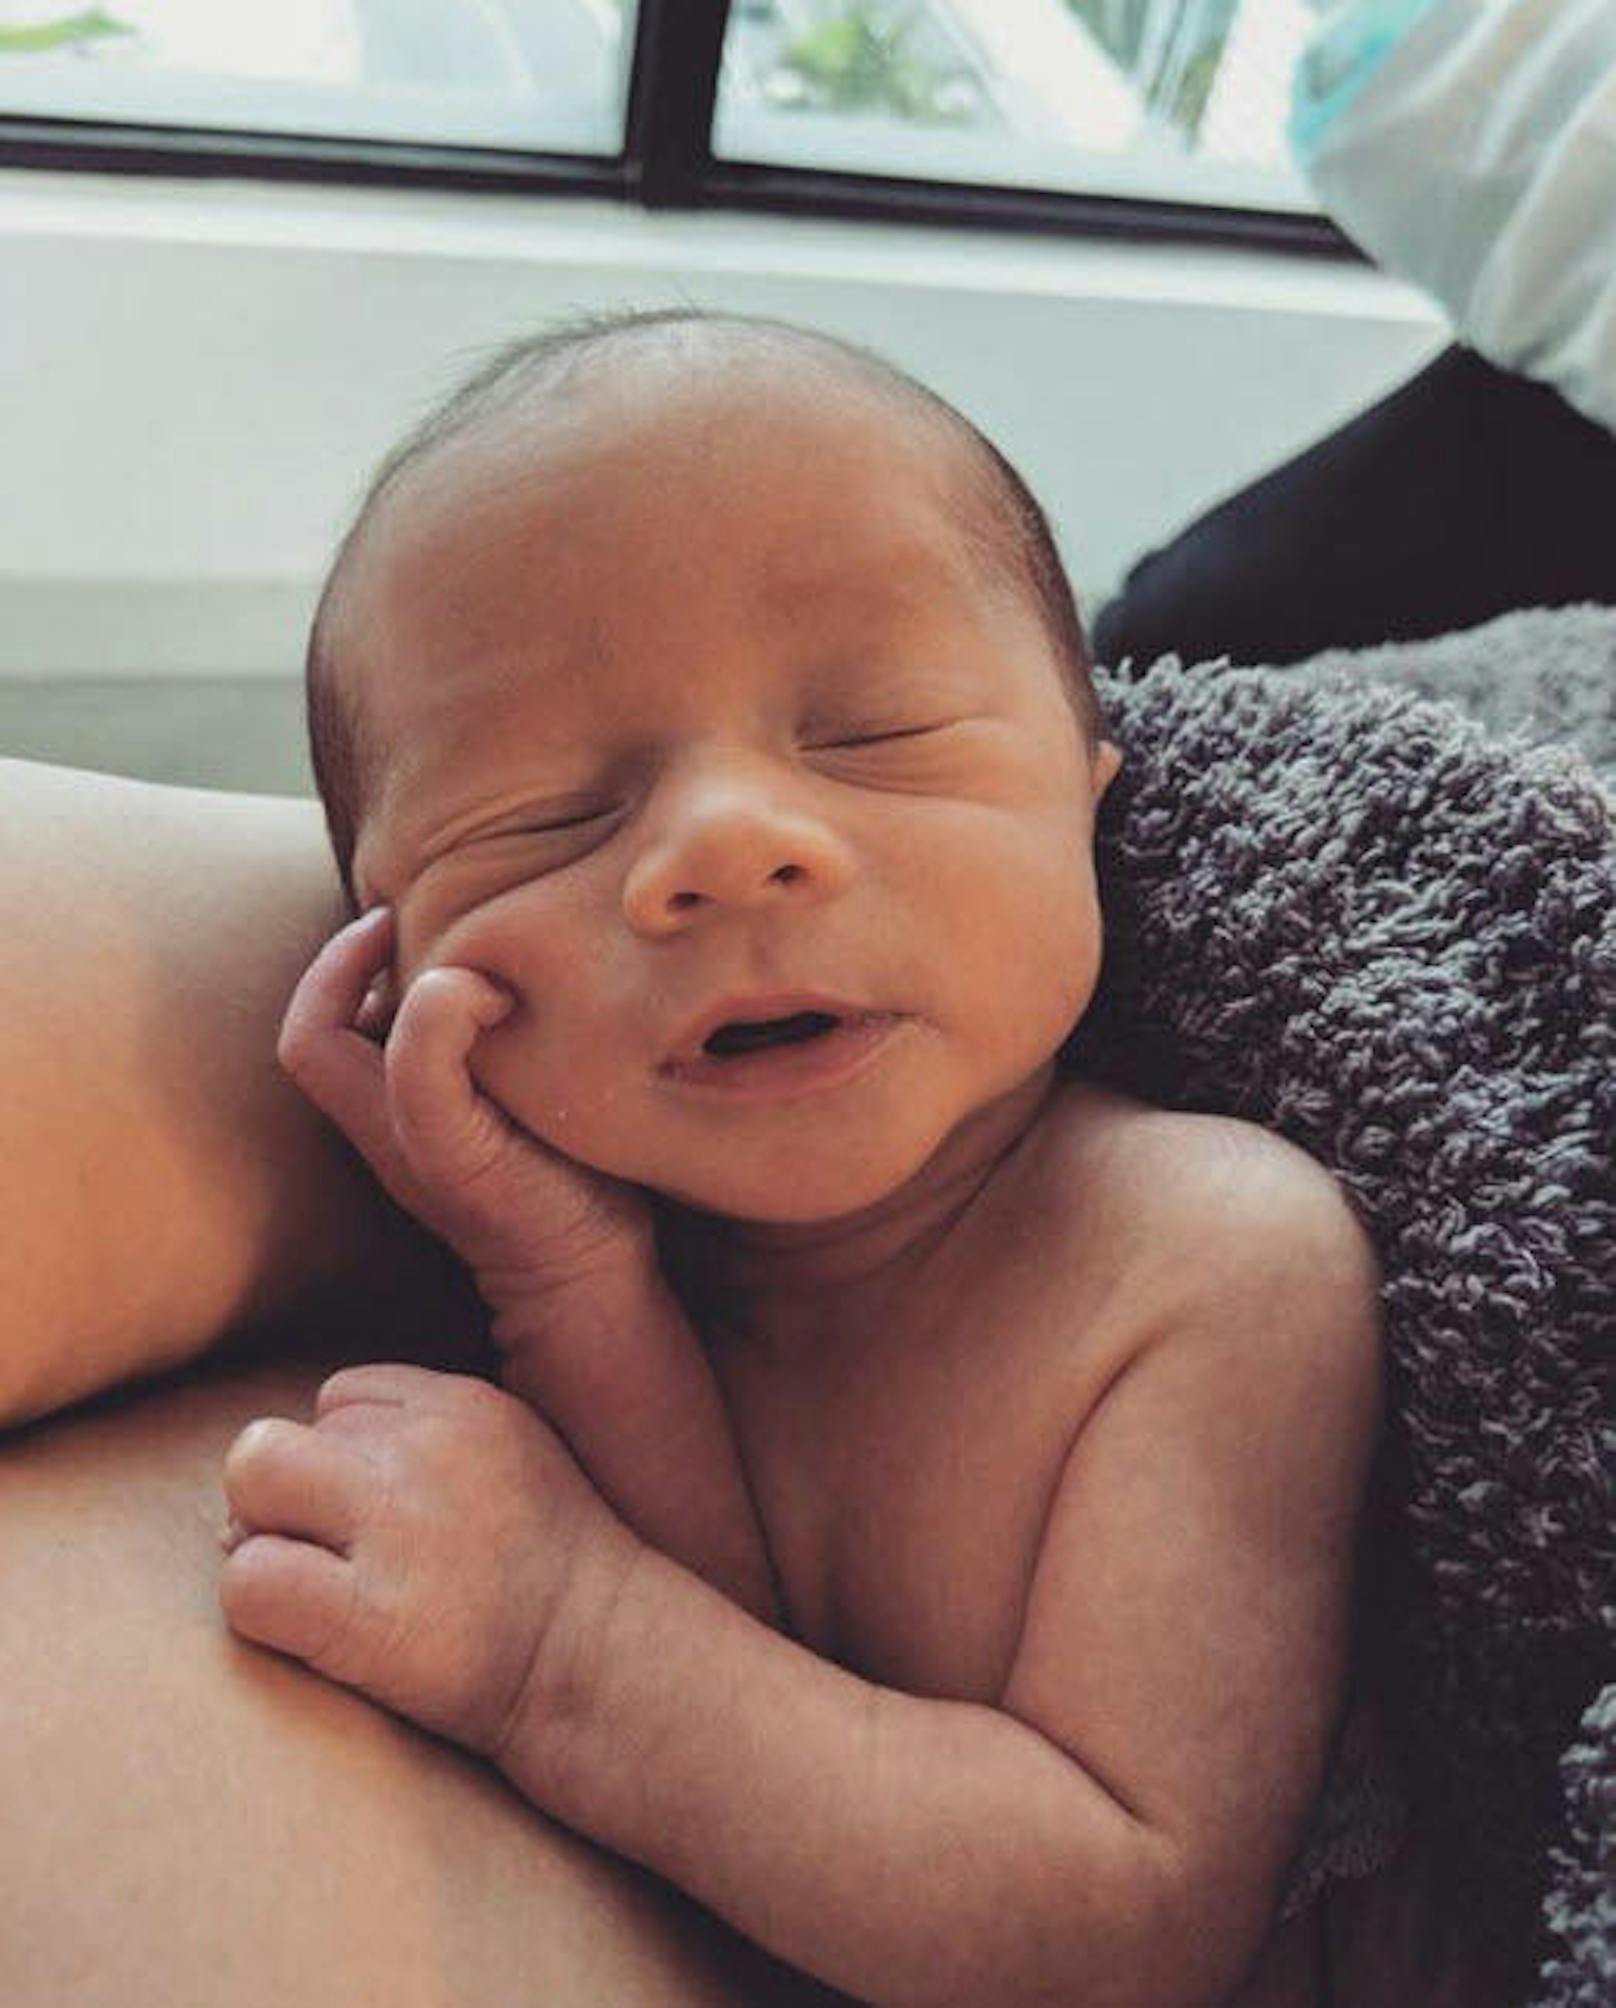 21.05.2018: Chrissy Teigen stellt ihren neugeborenen Sohn Miles Theodore Stephens der Welt vor...